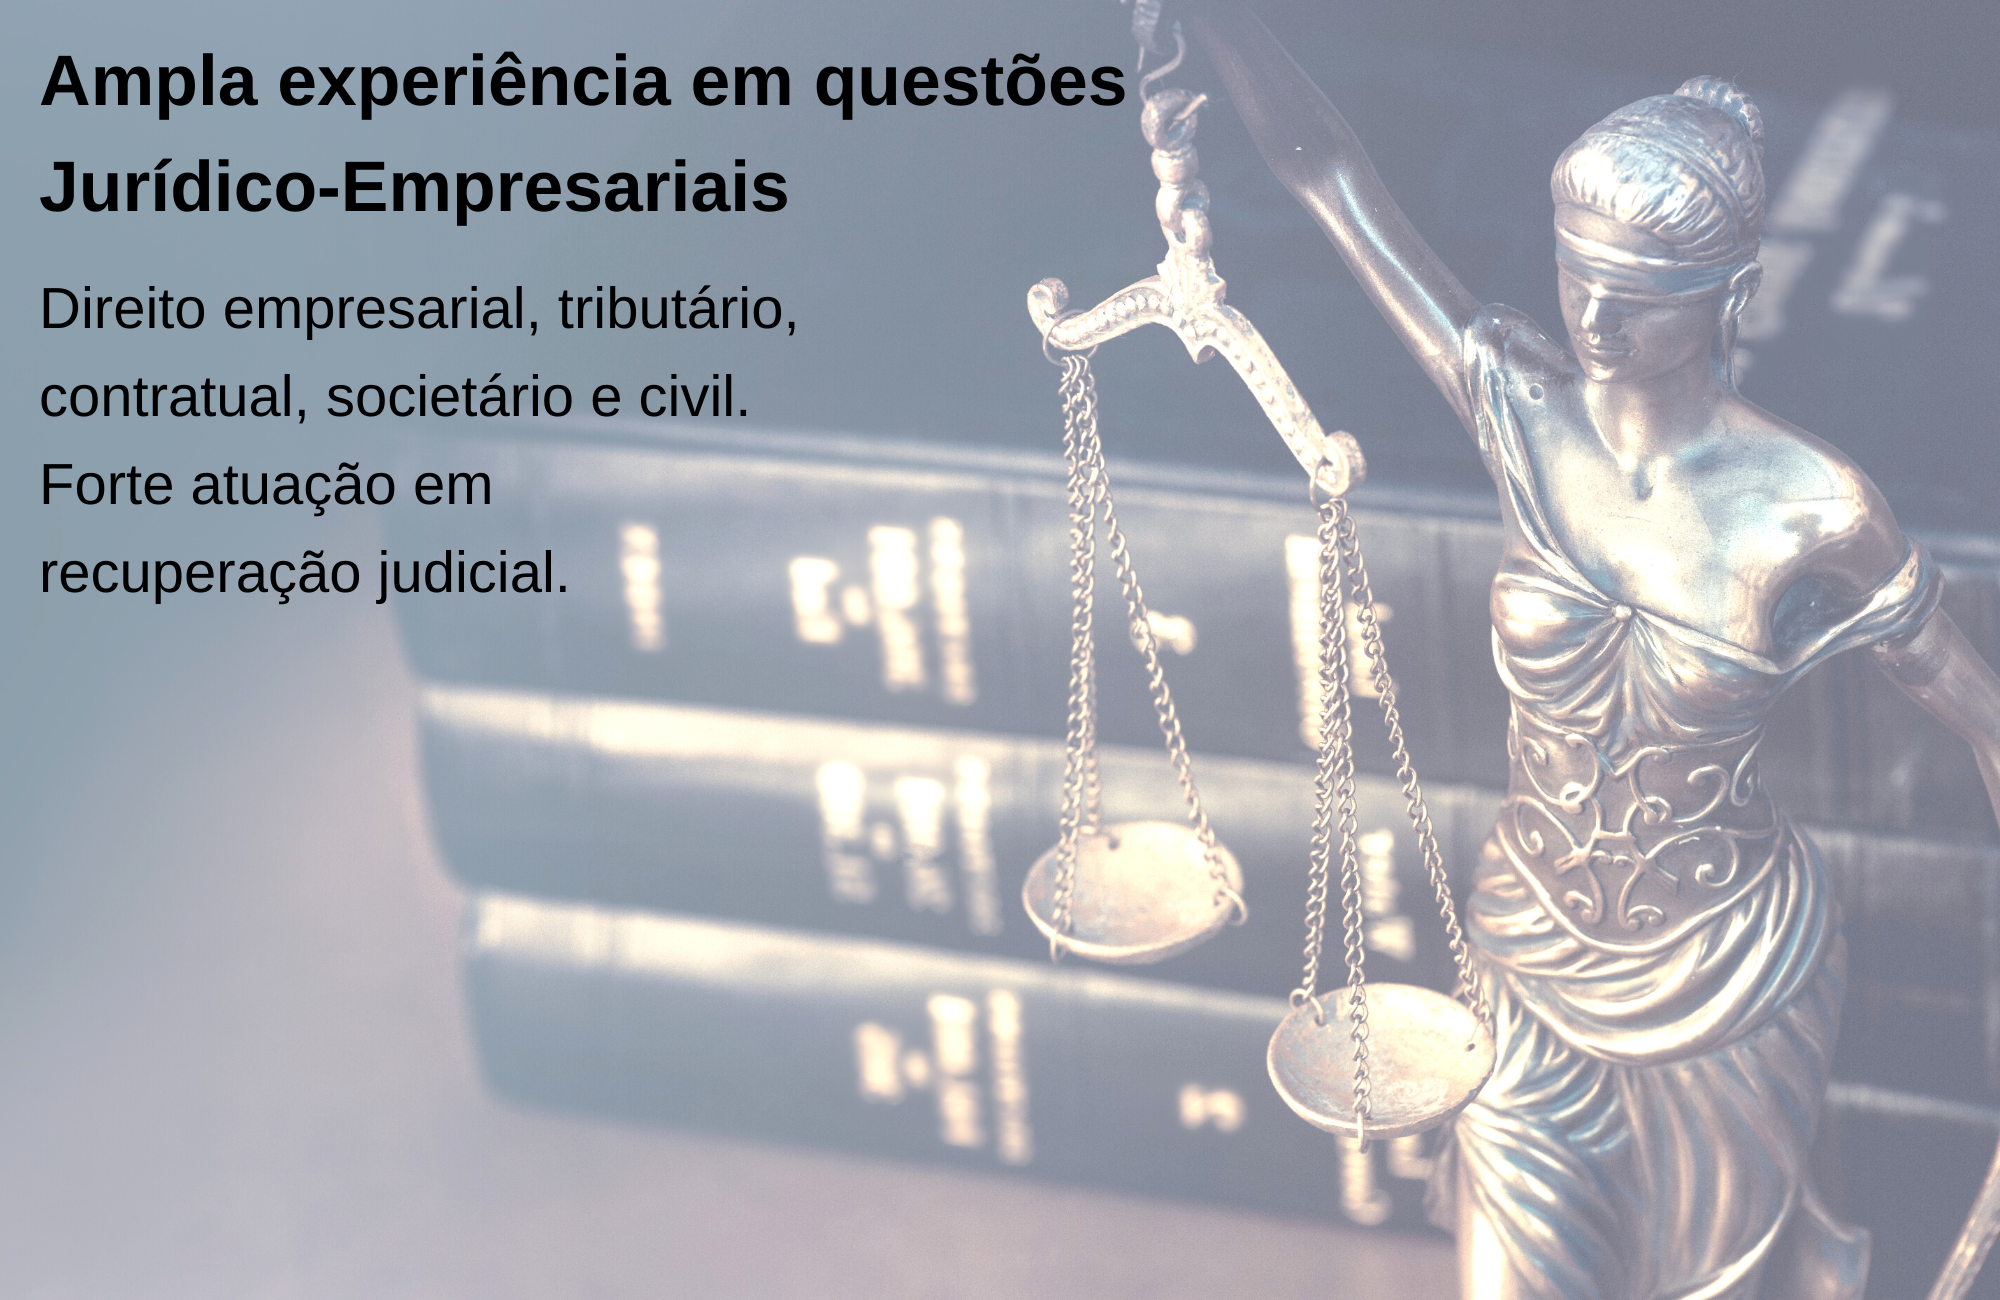 Ampla experiência em questões Jurídico-Empresariais